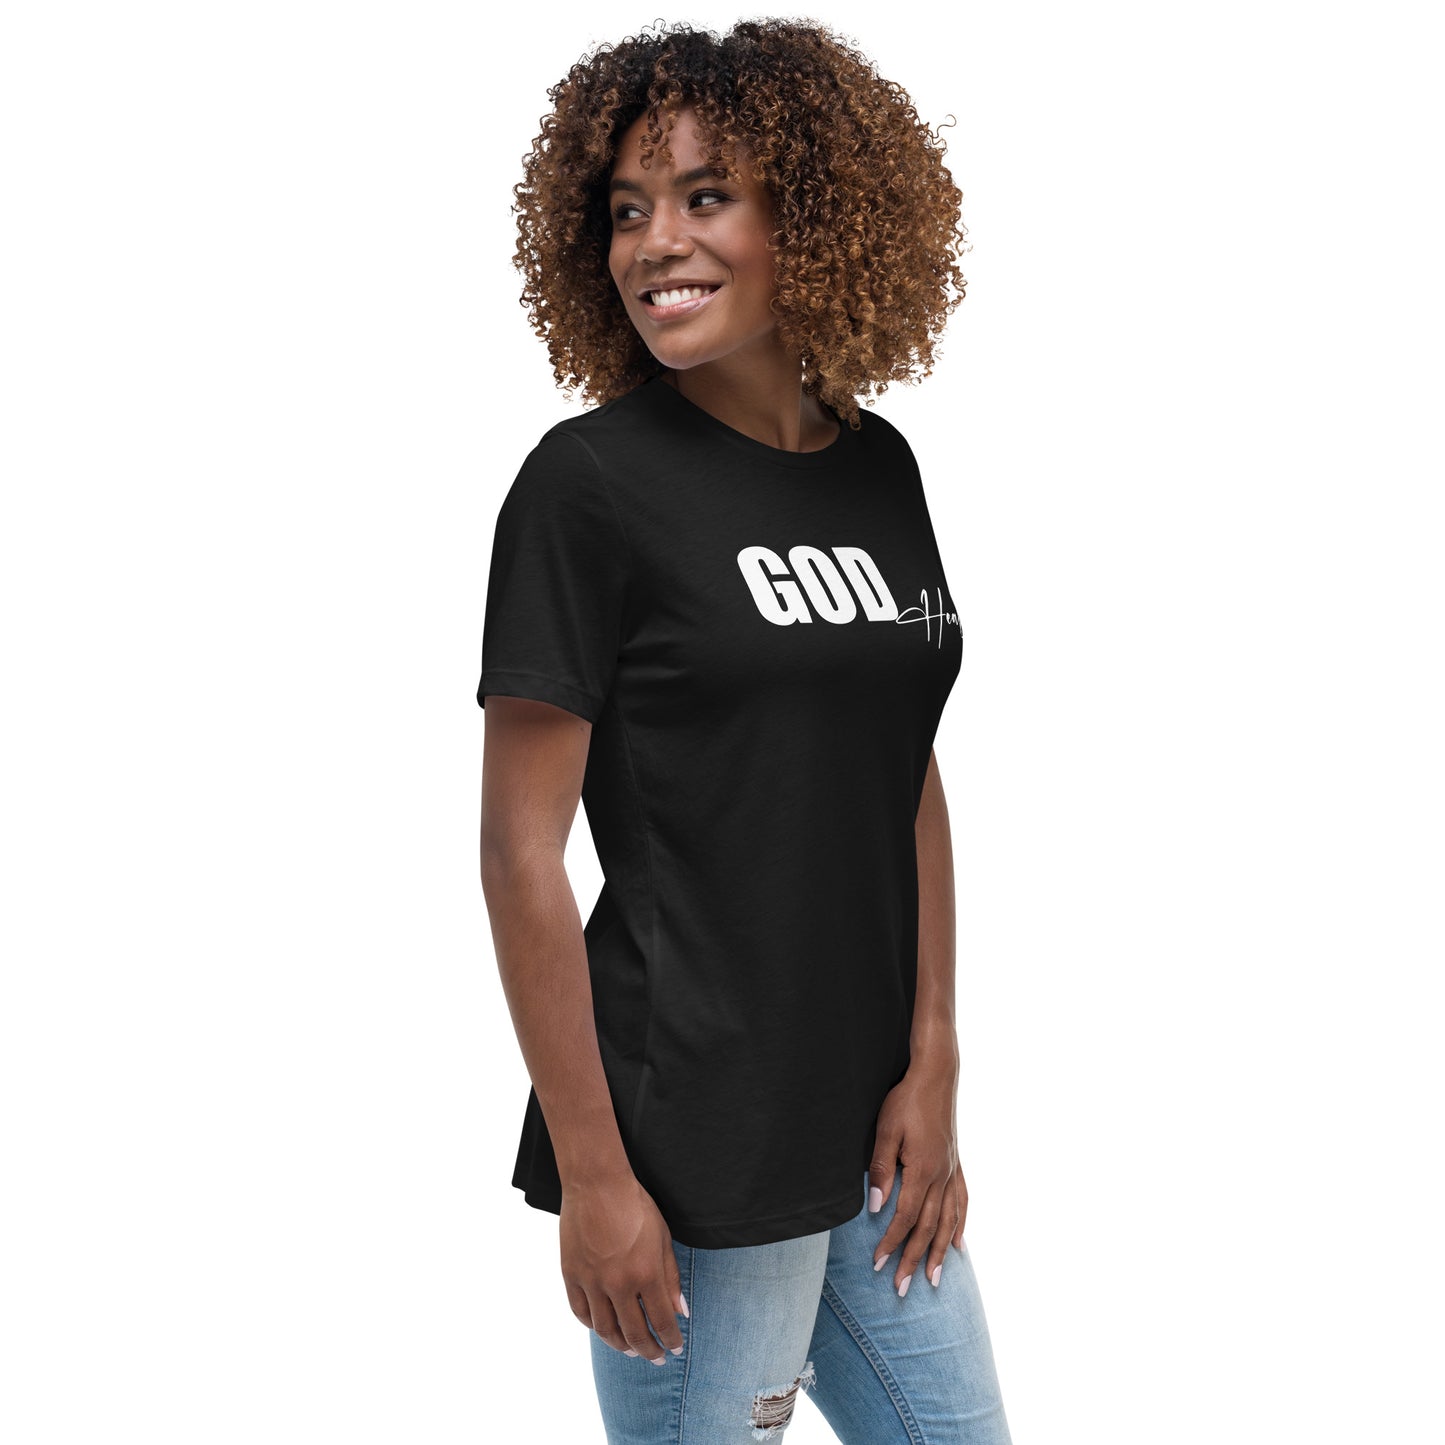 "God Heals" Women's T-Shirt